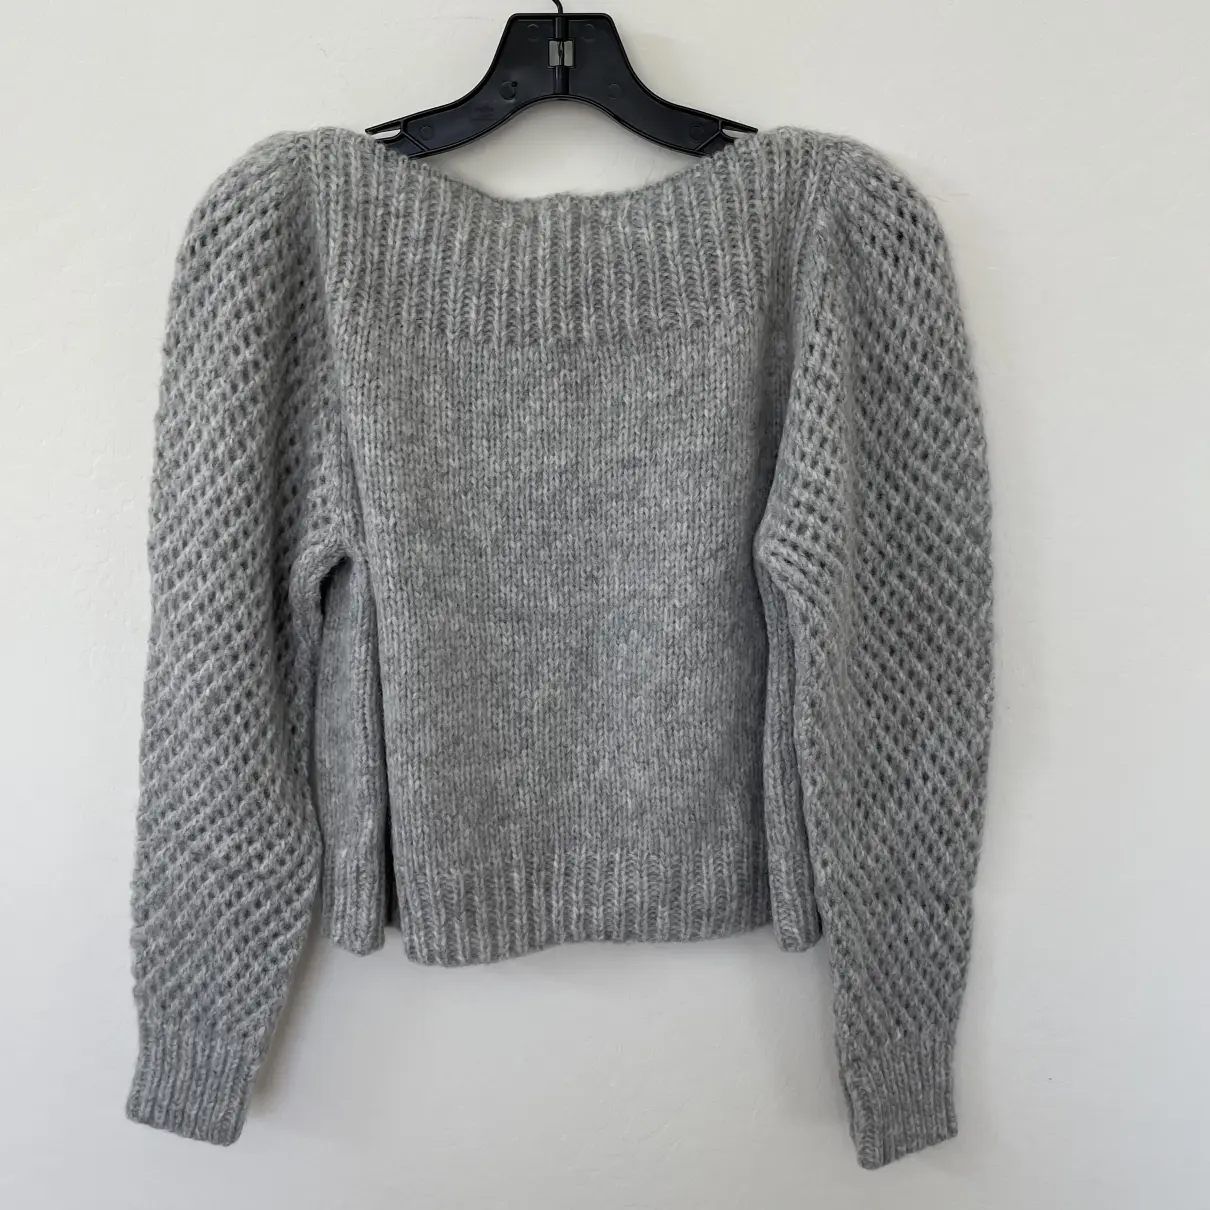 Buy Love Shack Fancy Wool jumper online